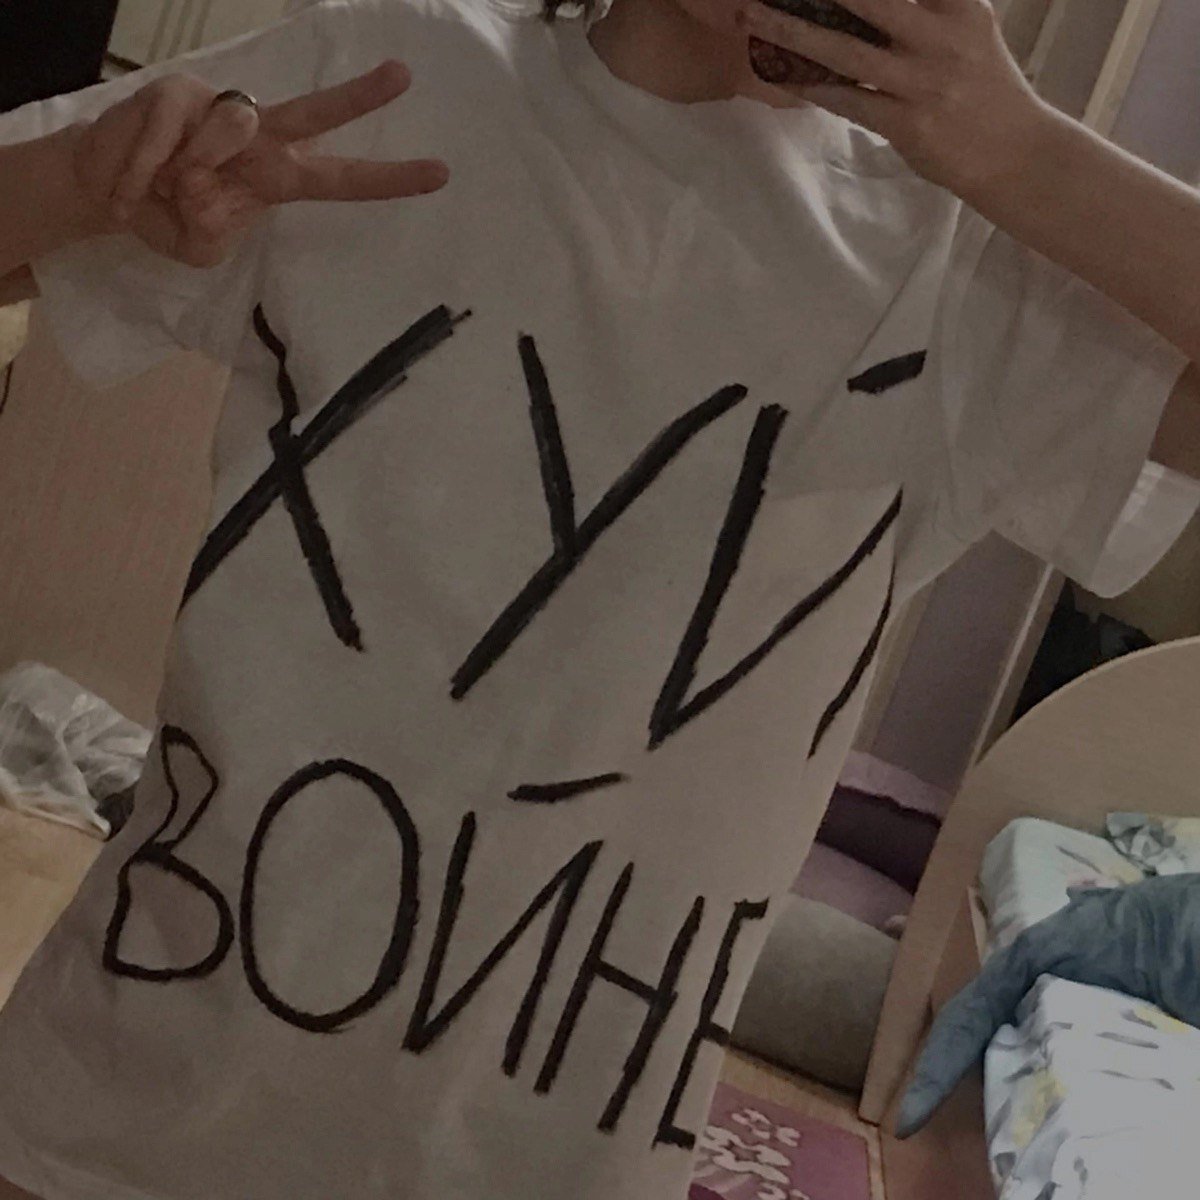 Антивоенная футболка Лизунковой. Фото из личного архива